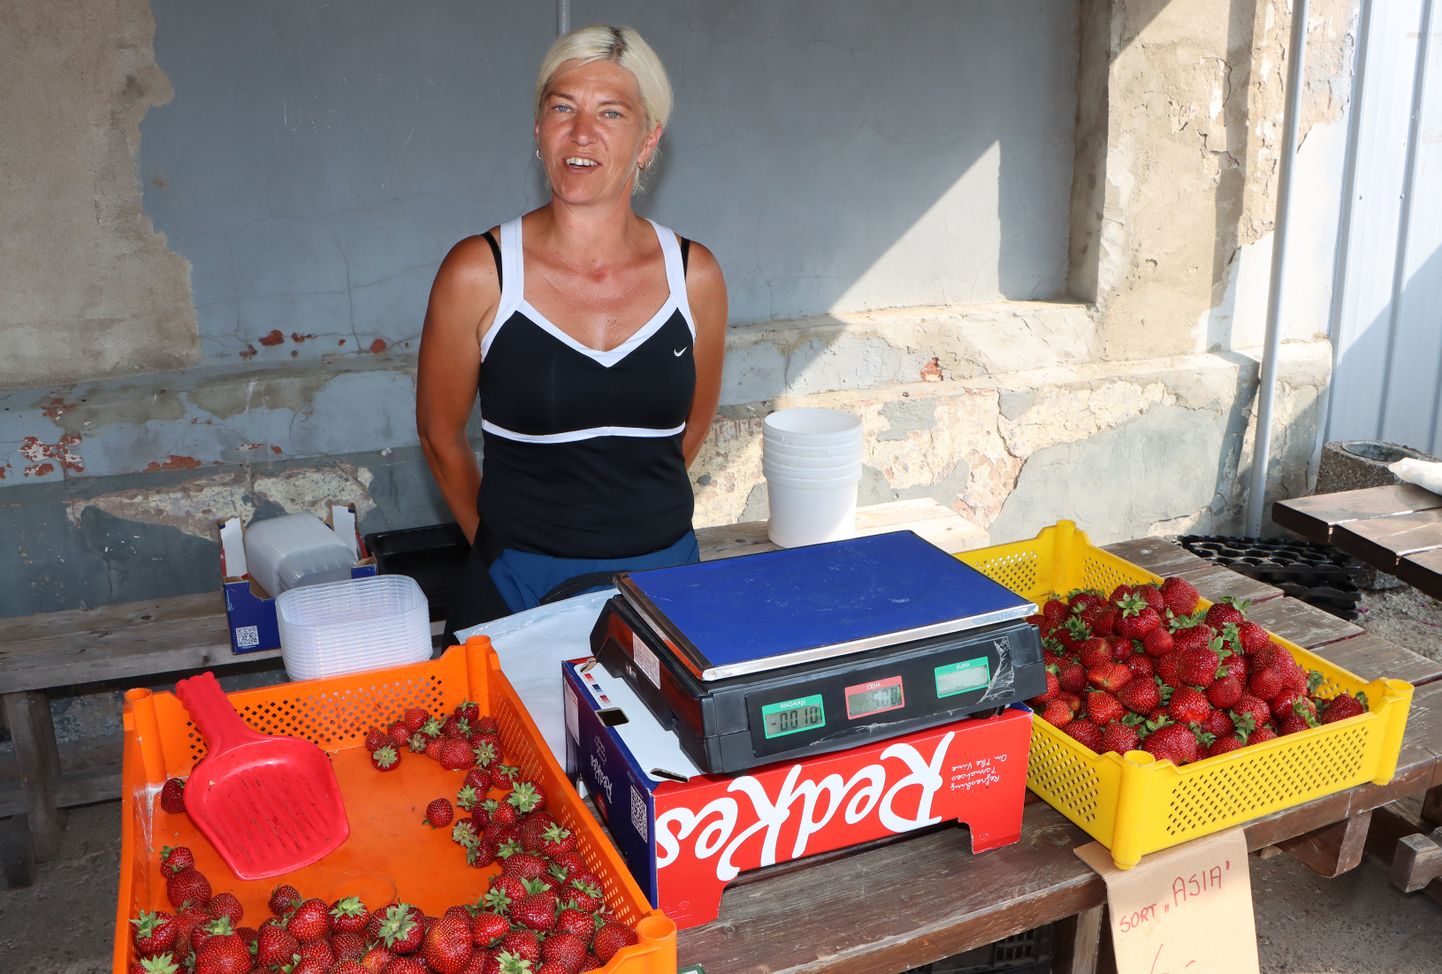 Torma maasikatega kauplev Piia eelistab ise "Asiat" "Sonatale", aga ostjaid jagub mõlemale sordile.